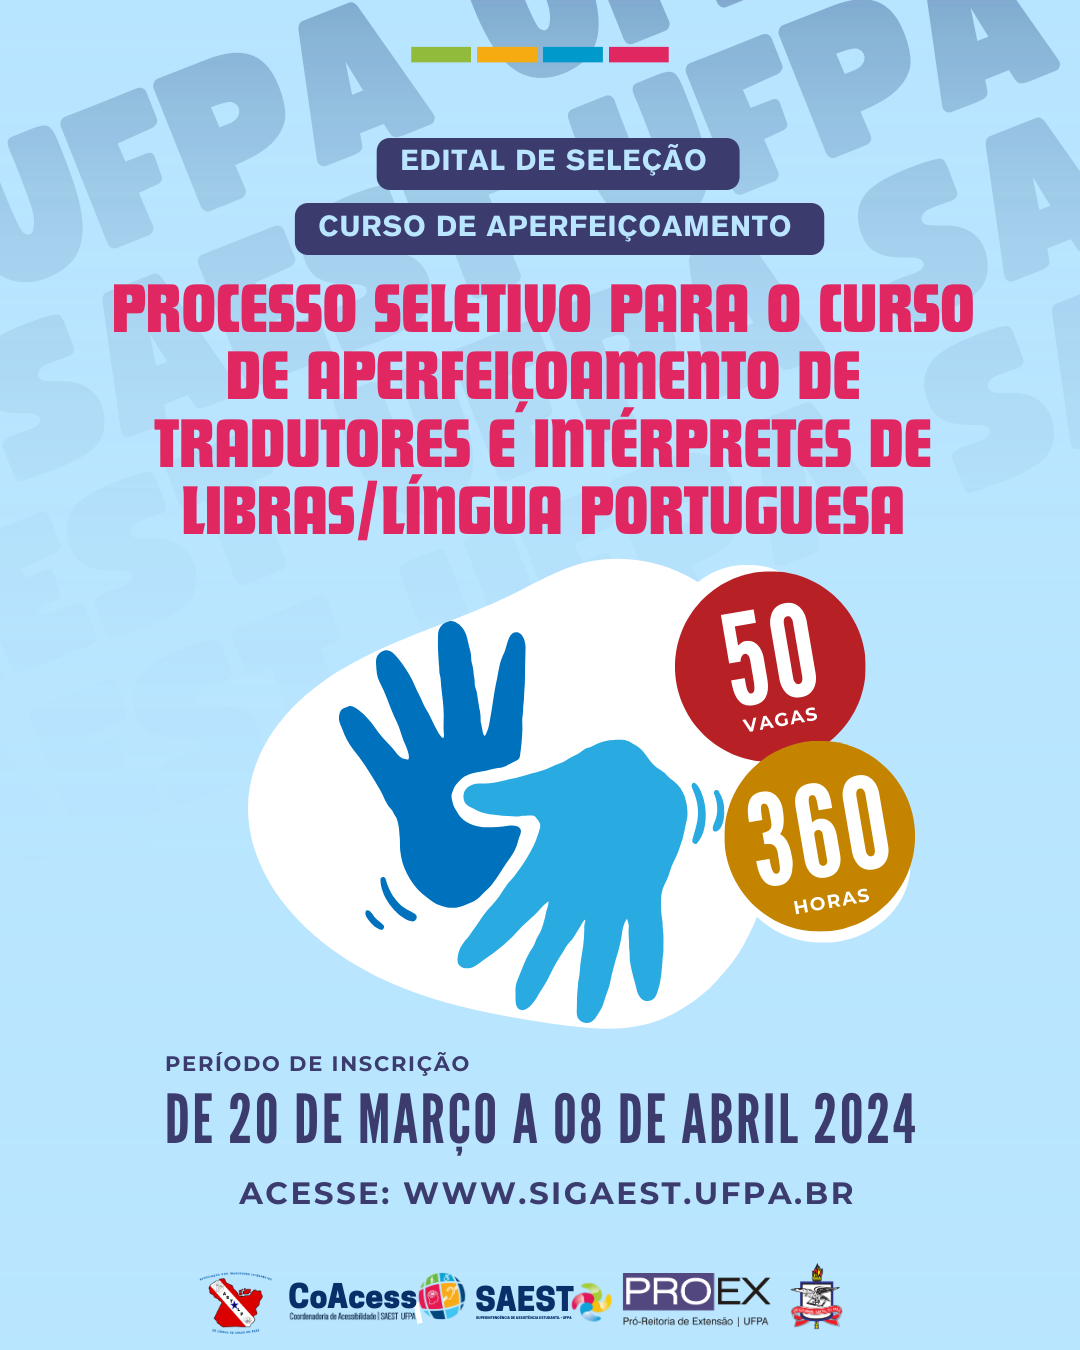 UFPA LANÇA EDITAL PARA APERFEIÇOAMENTO DE TRADUTORES E INTÉRPRETES DE LIBRAS/LÍNGUA PORTUGUESA